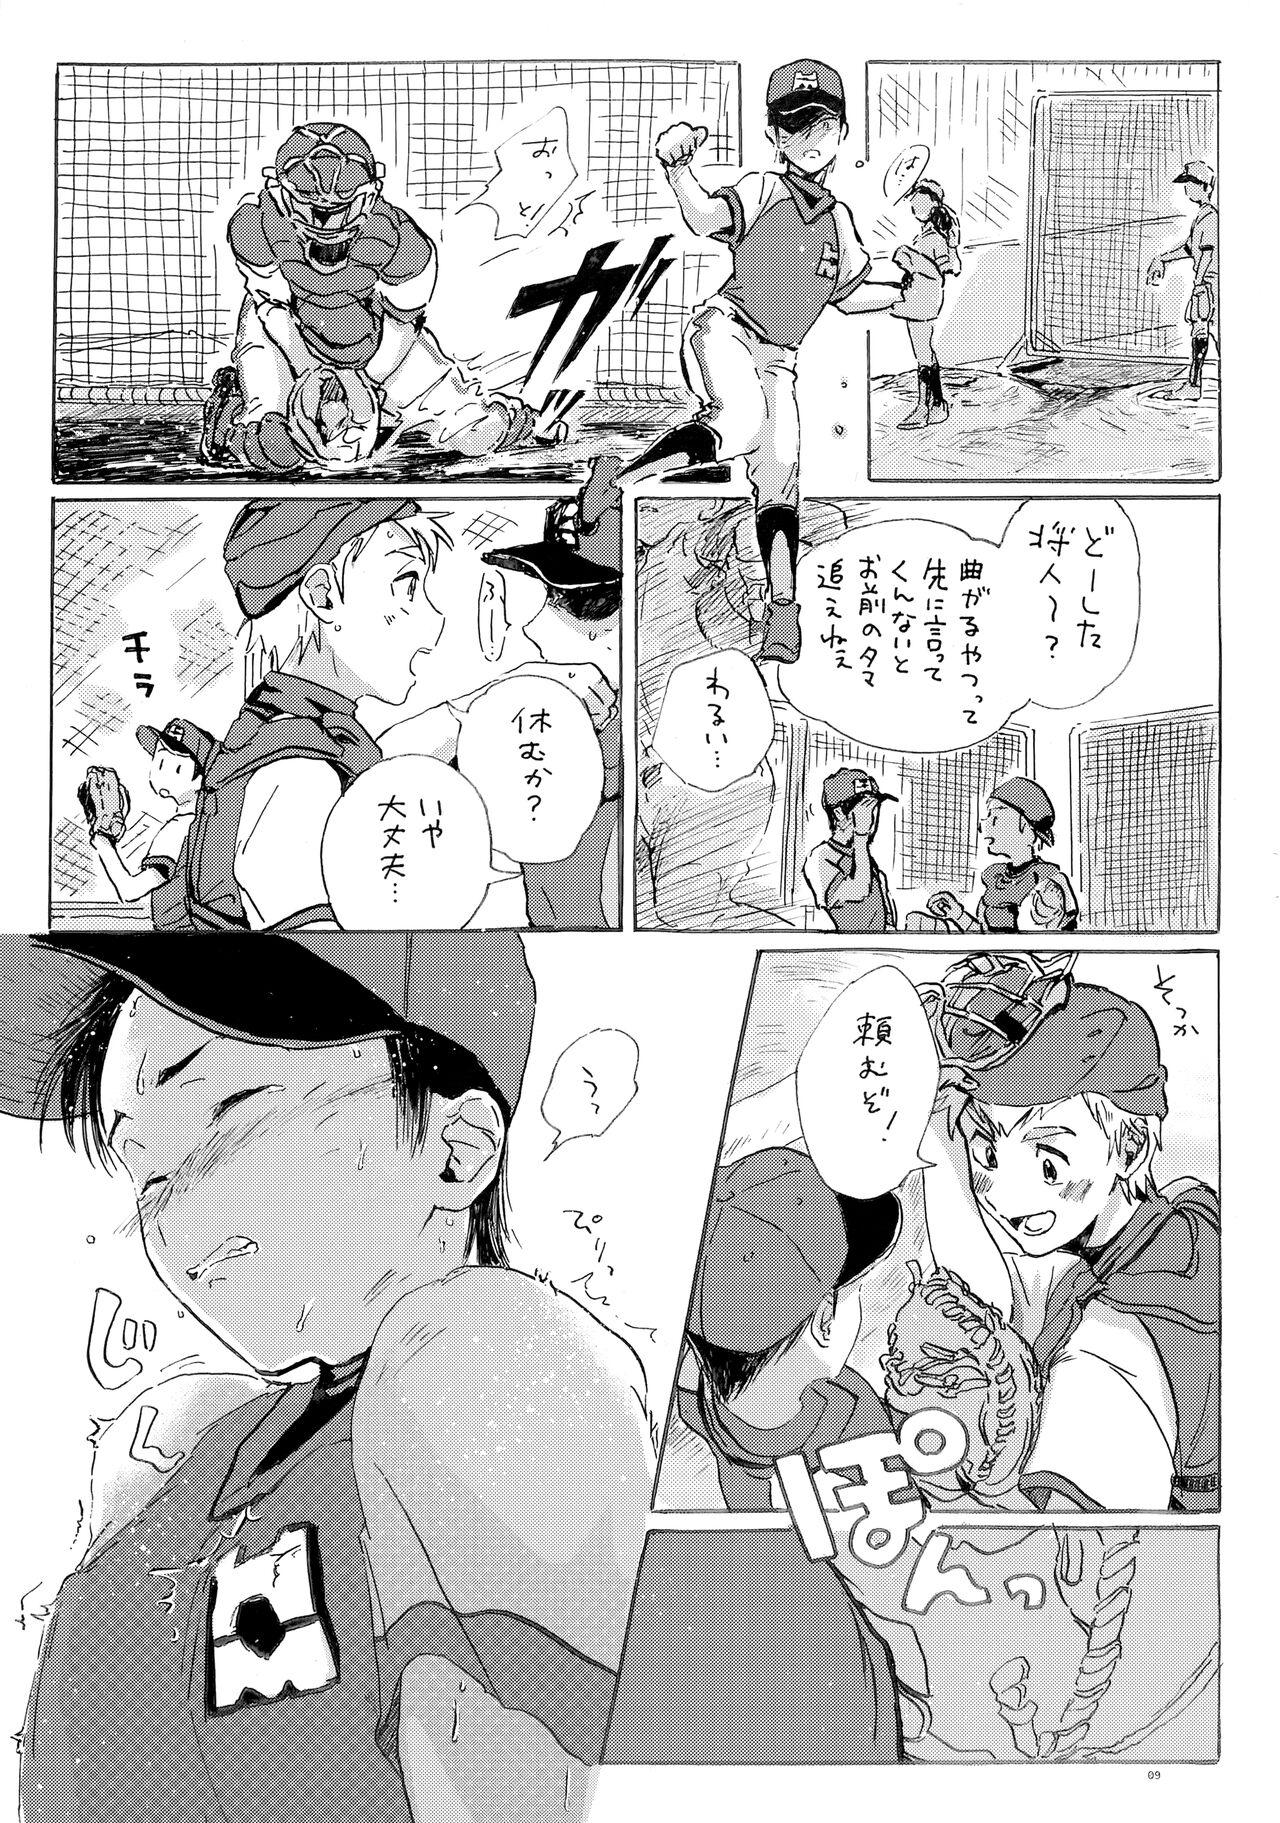 Pinoy Kono mama Enchoushite Ookurishimasu - Major Monstercock - Page 8